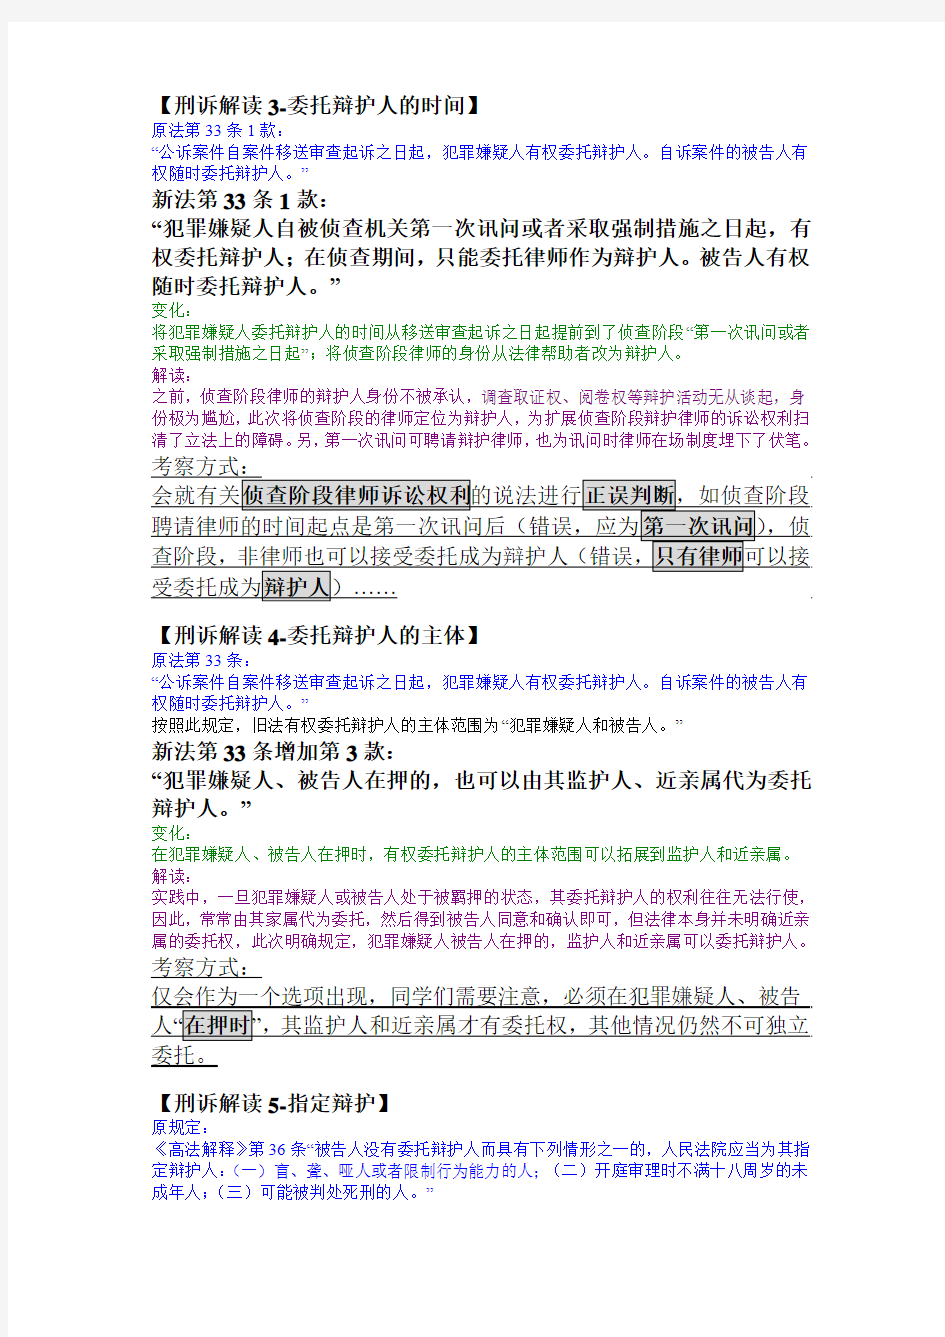 @日知为智 陈少文老师新刑诉法解读微博整理精校(段落版)01-99